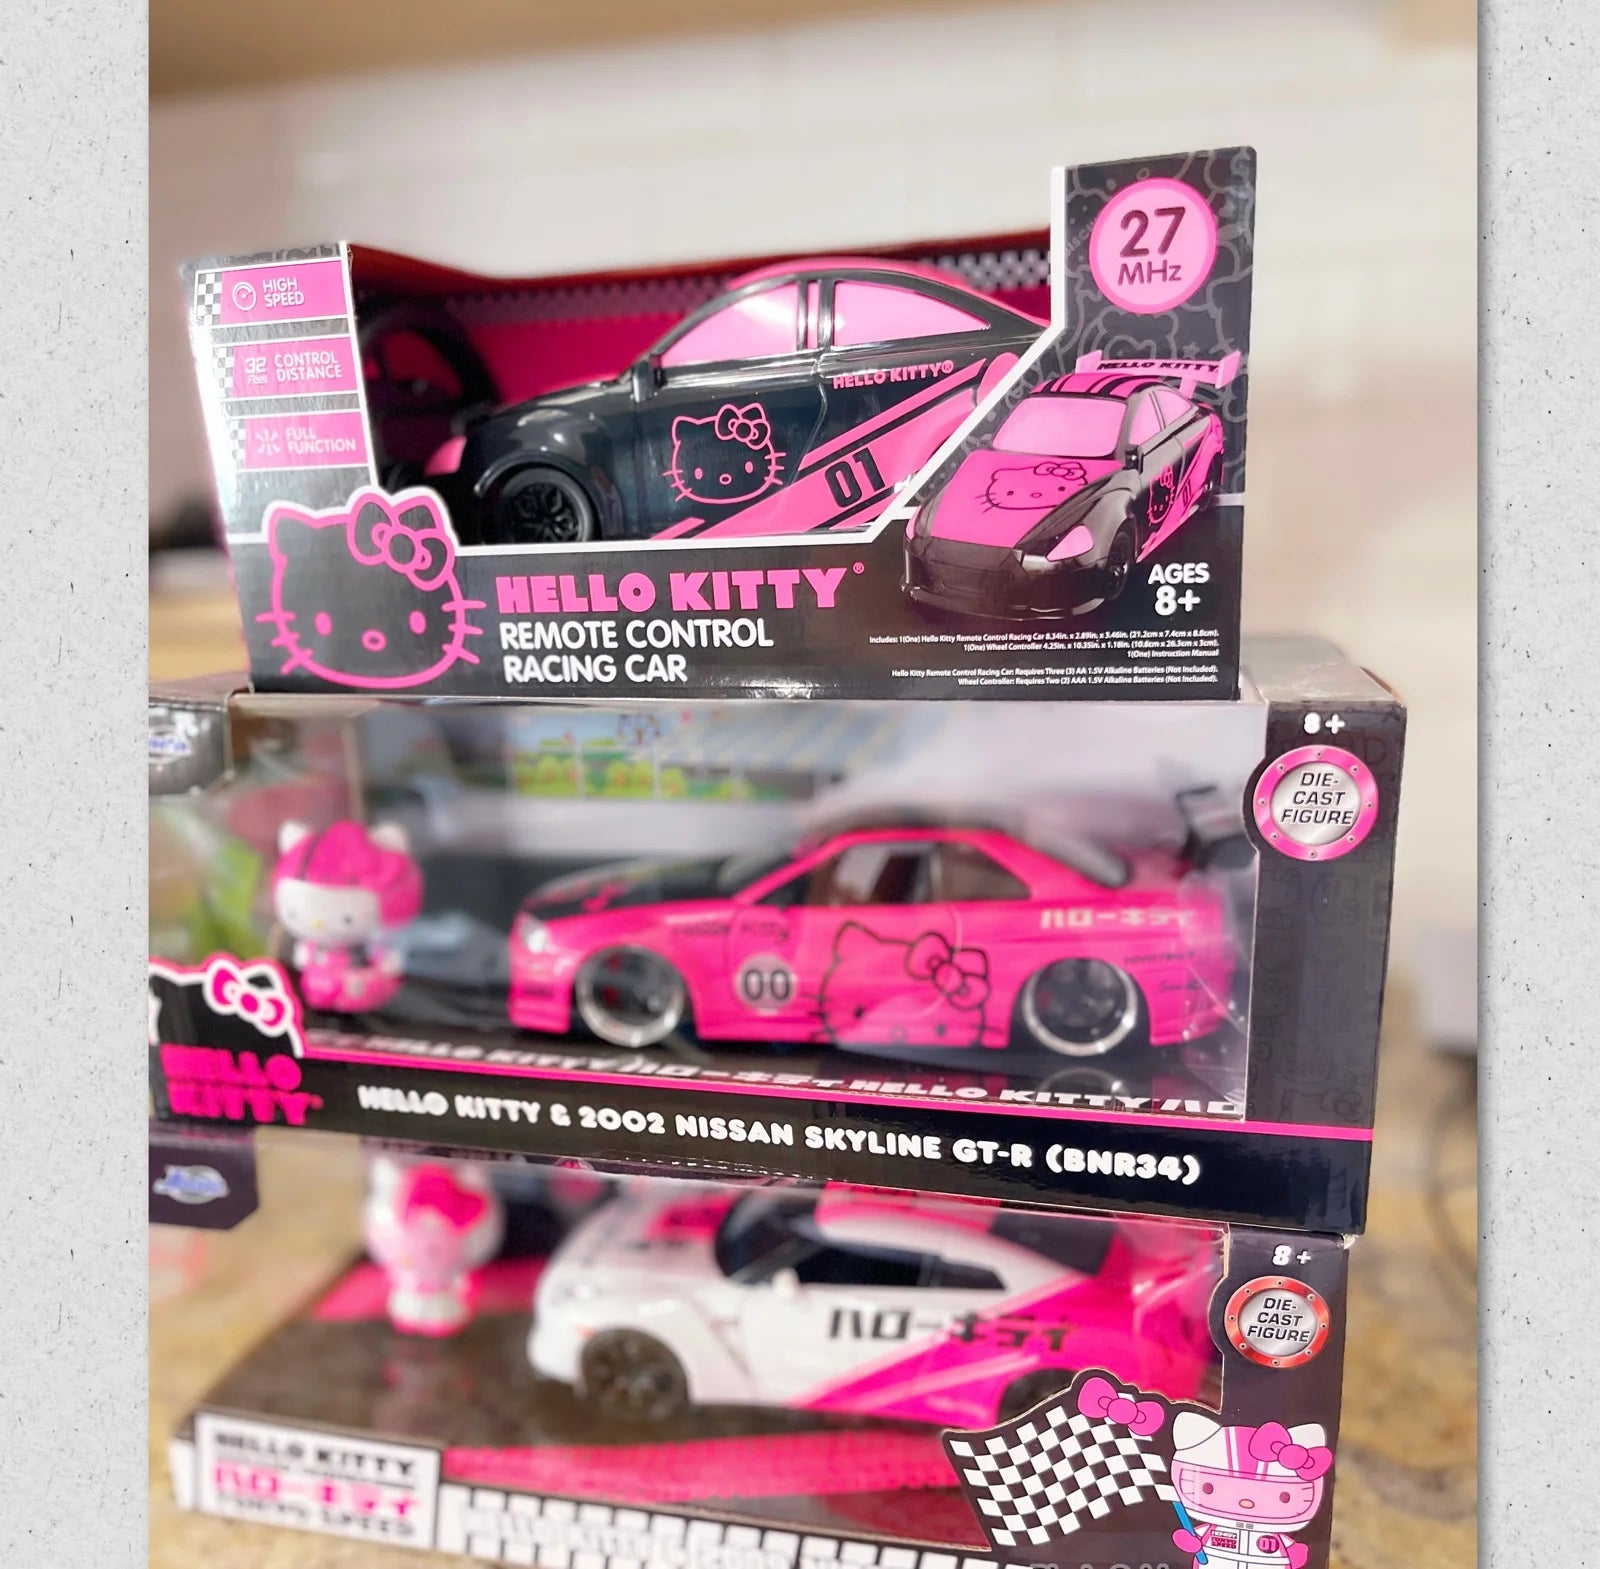 Jada Toys Hello Kitty Nissan Skyline GT-R (Bnr34) Drift R/C Car – Pink, USB Charge, 4 Extra Tires